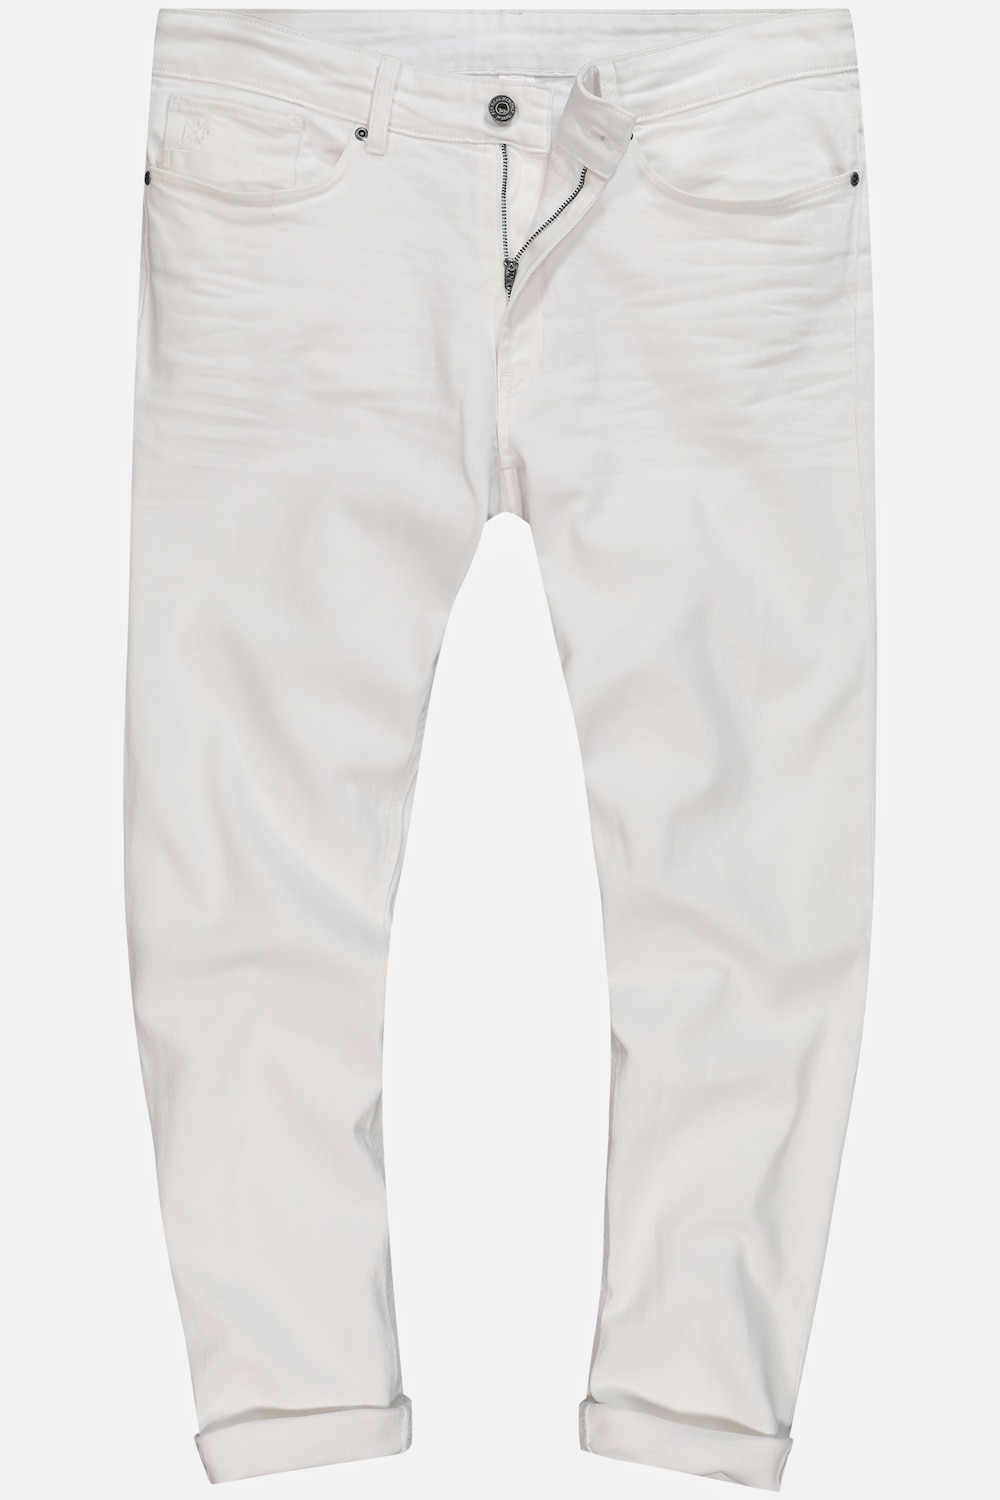 Grote Maten Jeans, Heren, wit, Maat: 64, Katoen, JP1880